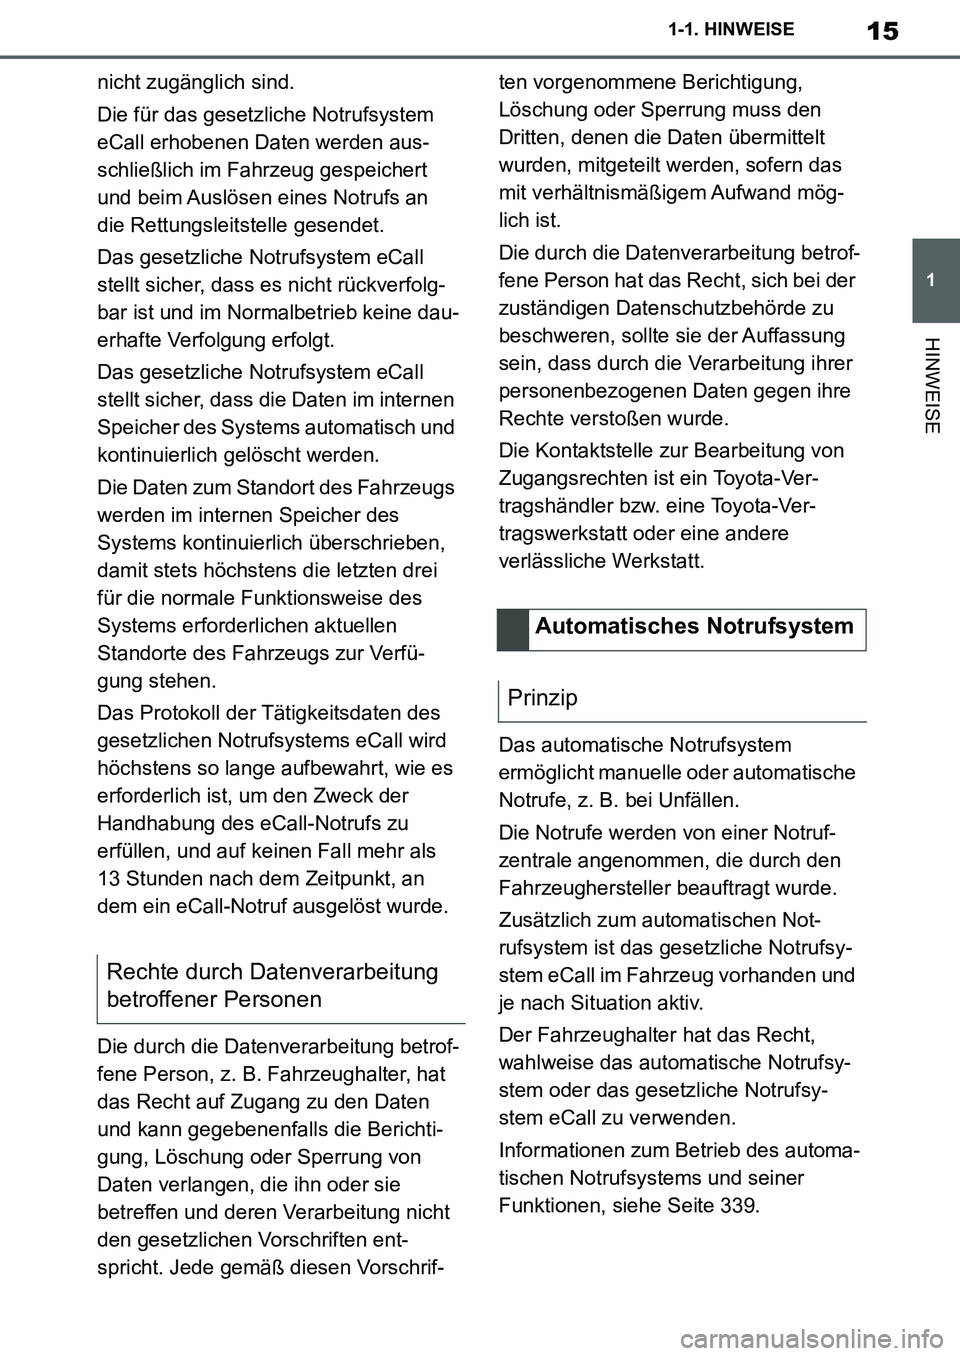 TOYOTA SUPRA 2020  Betriebsanleitungen (in German) 15
1
Supra Owners Manual_EM
1-1. HINWEISE
HINWEISE
nicht zugänglich sind.
Die für das gesetzliche Notrufsystem 
eCall erhobenen Daten werden aus-
schließlich im Fahrzeug gespeichert 
und beim Ausl